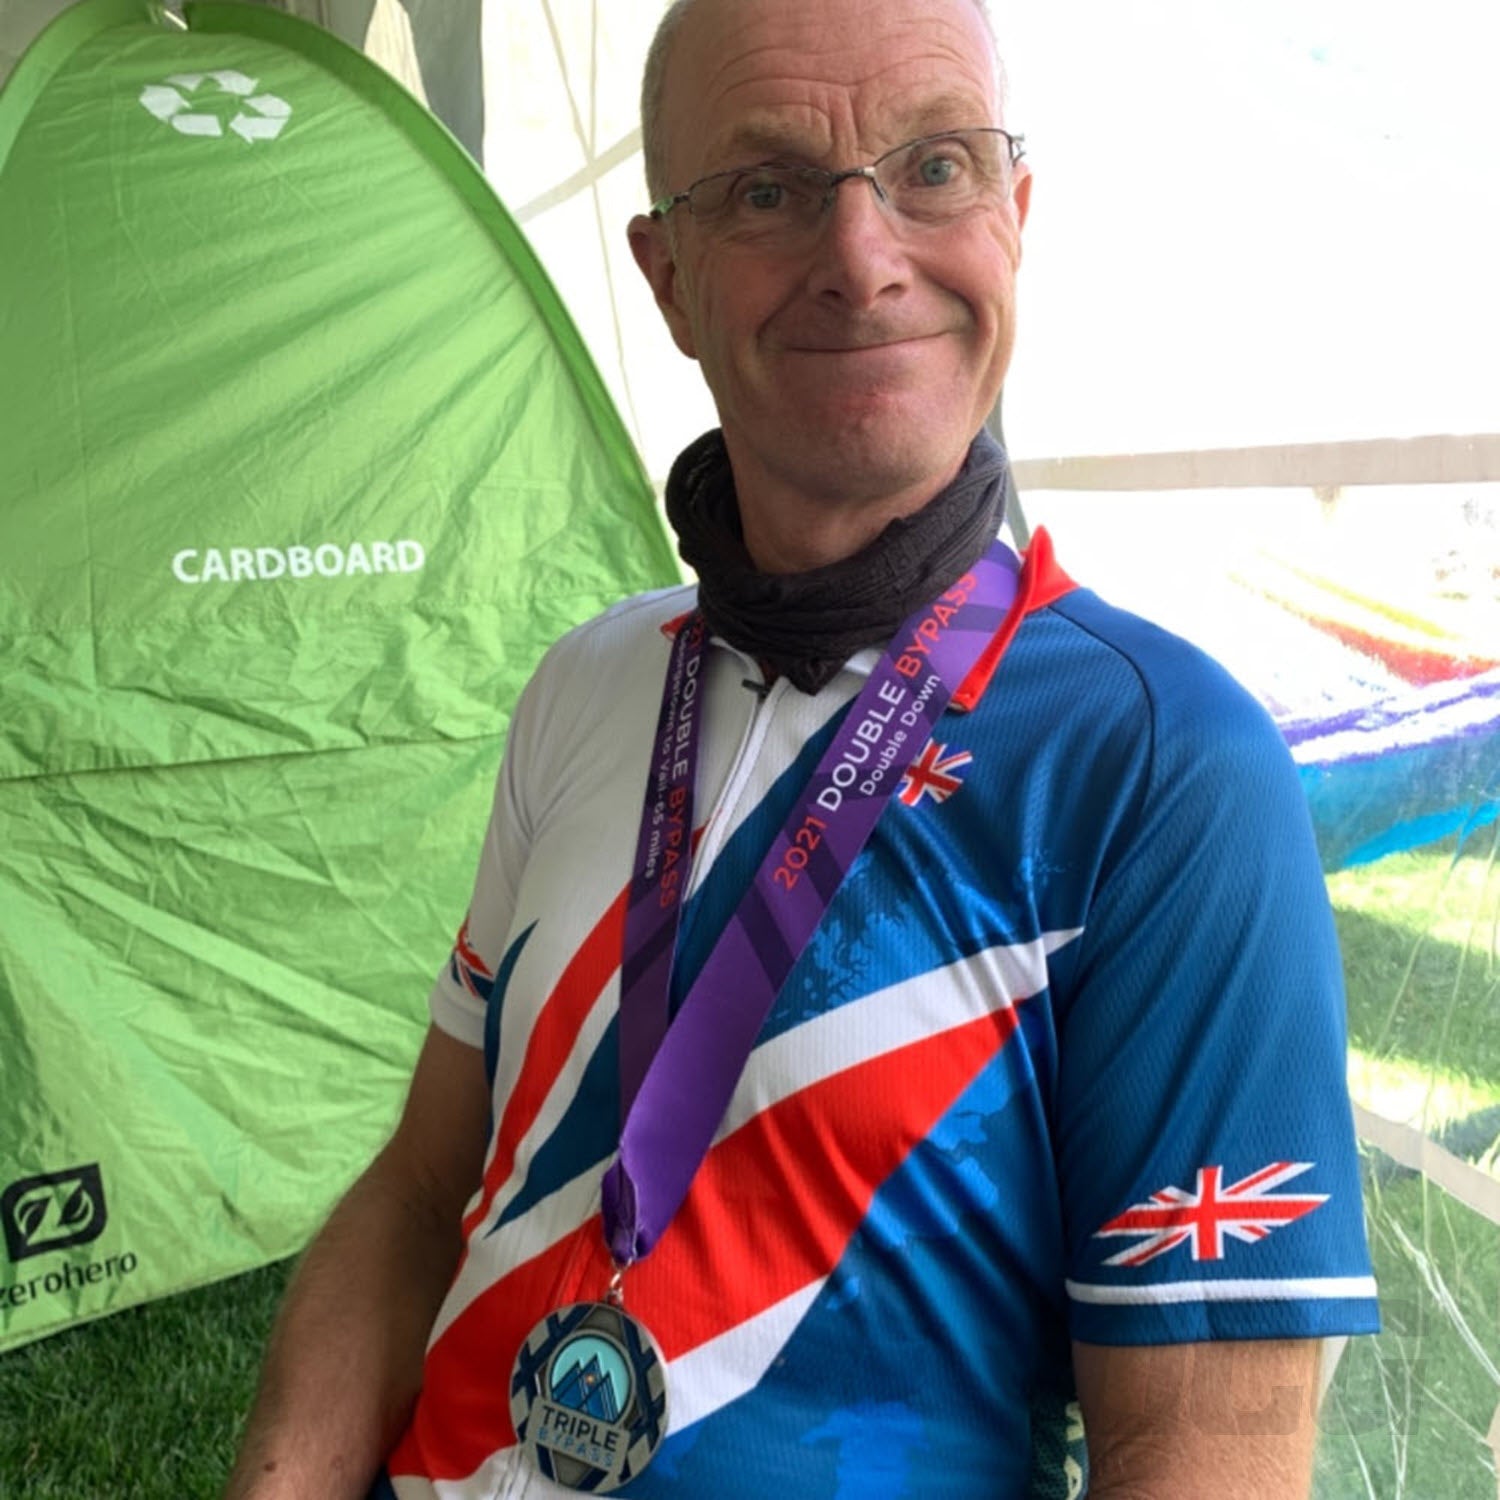 Men's UK Badge Union Jack Short Sleeve Cycling Jersey